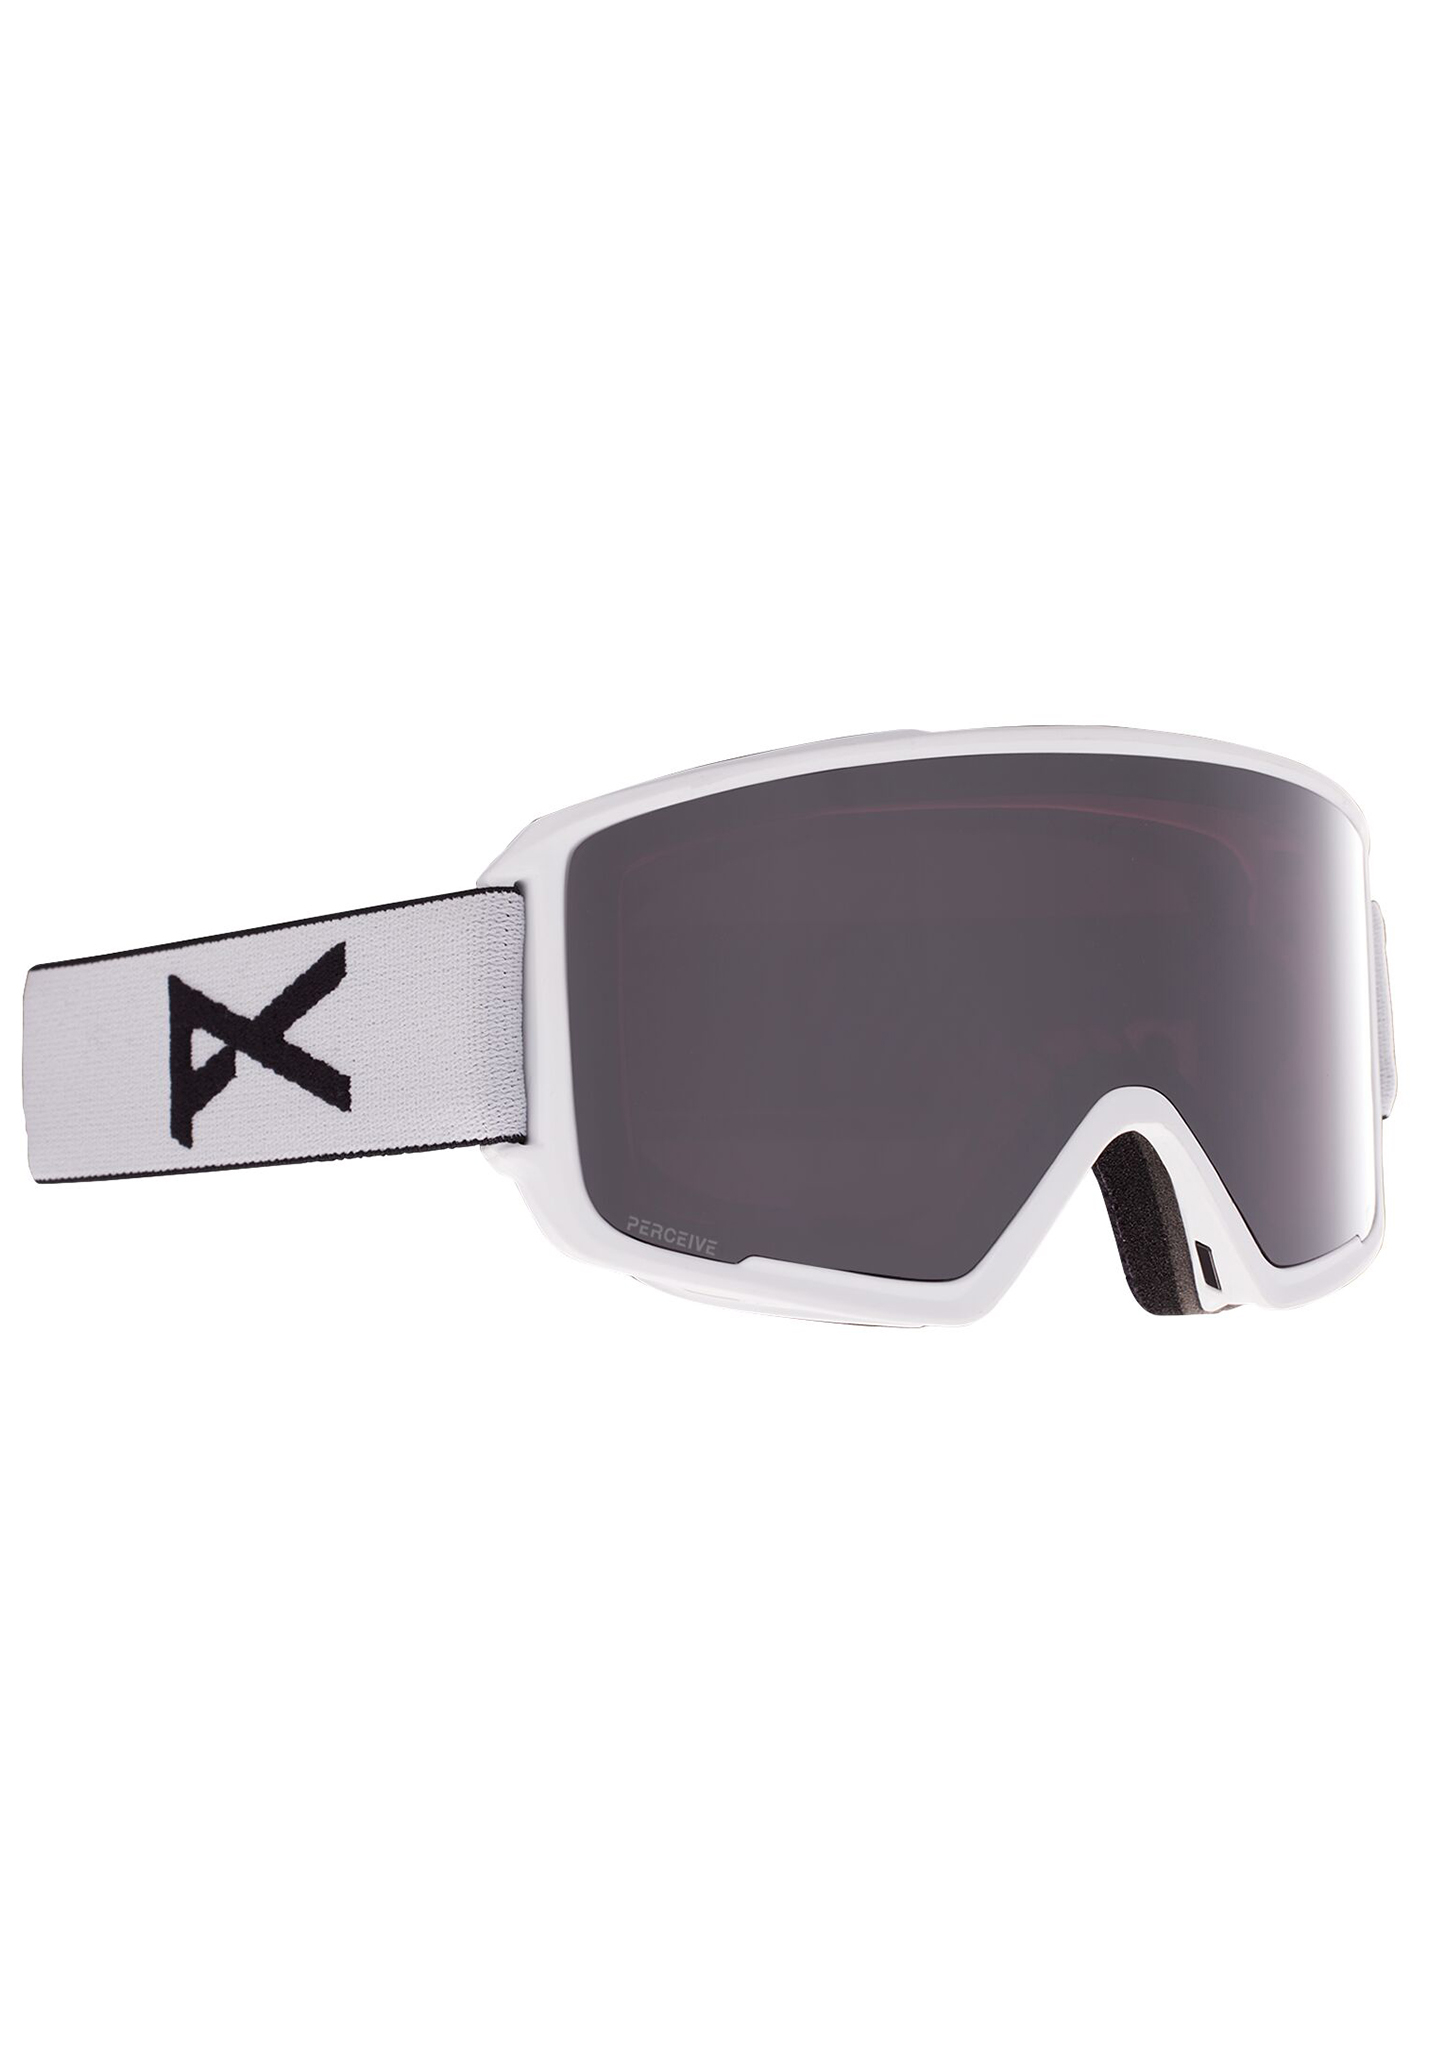 Anon M3 Snowboardbrillen weiß/prcv sun onyx One Size